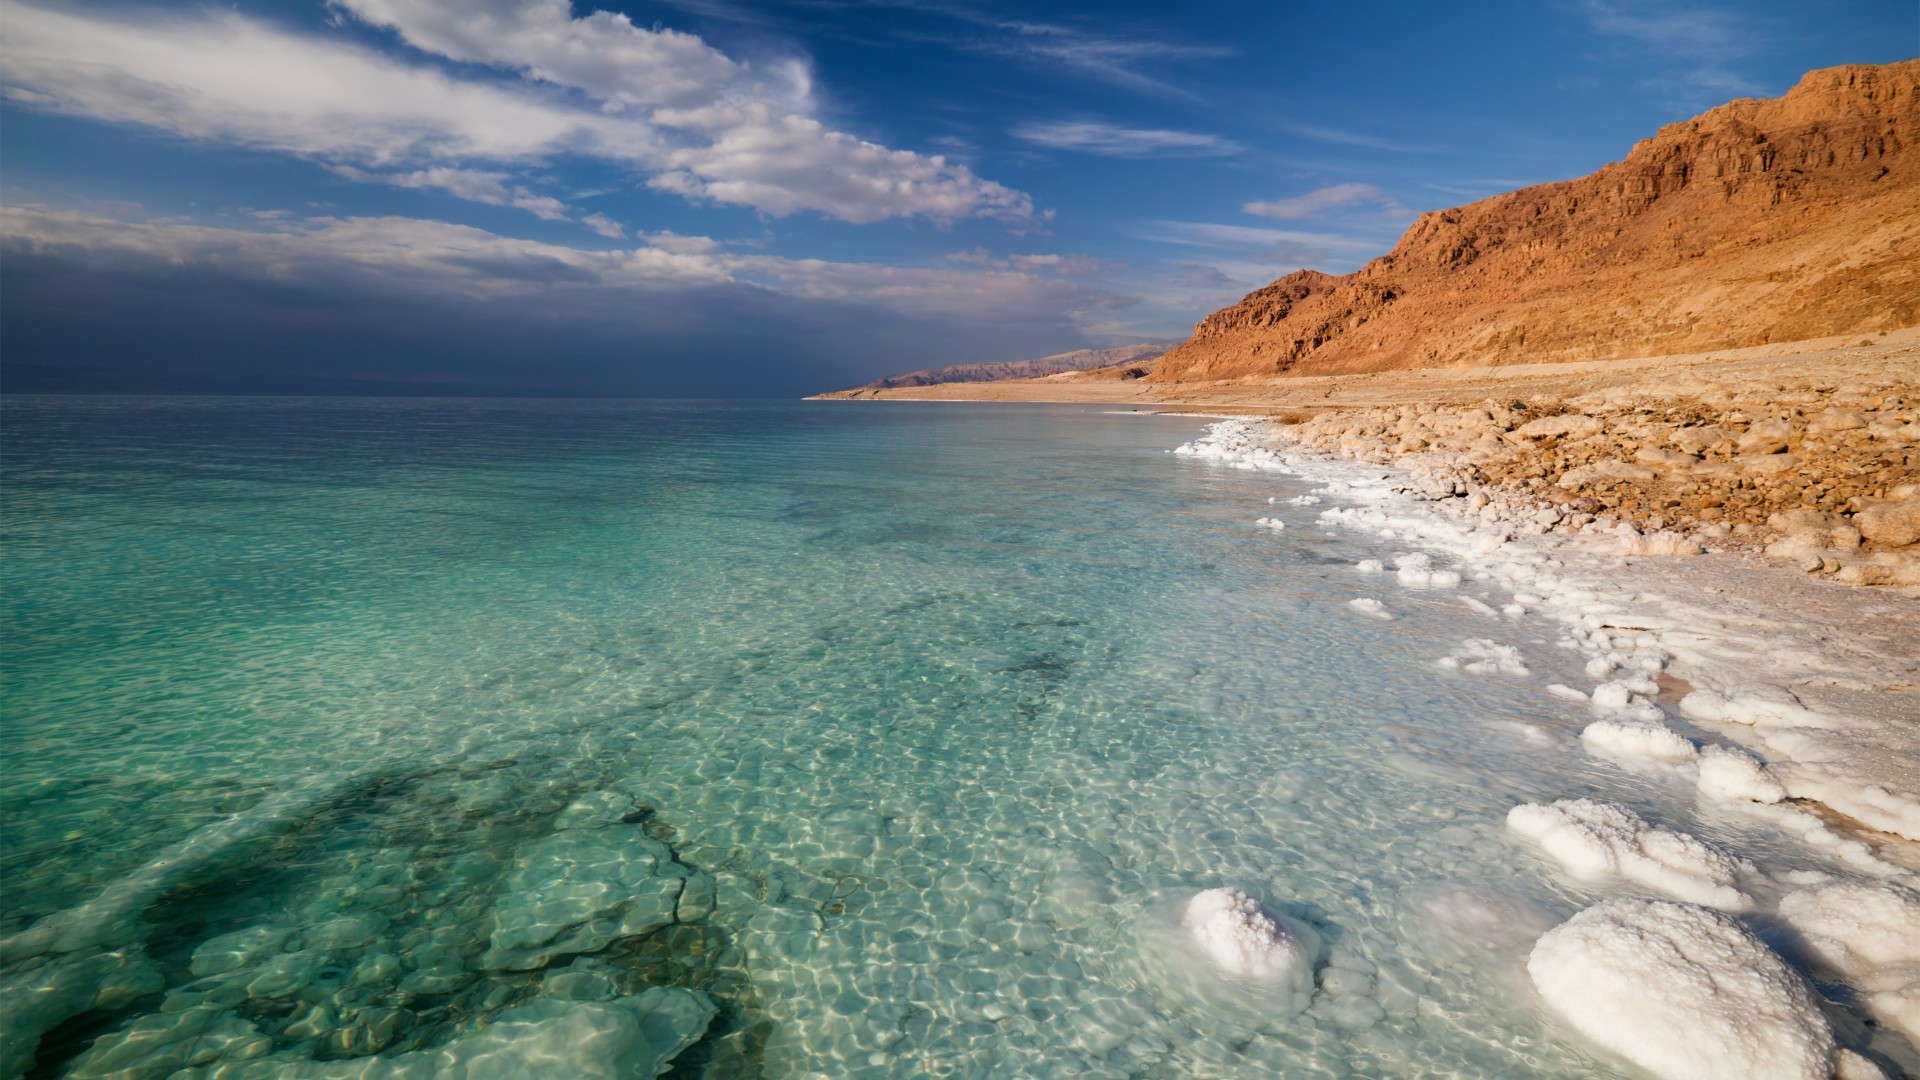 General 1920x1080 nature landscape mountains clouds Dead Sea salt lakes stones desert sea Israel